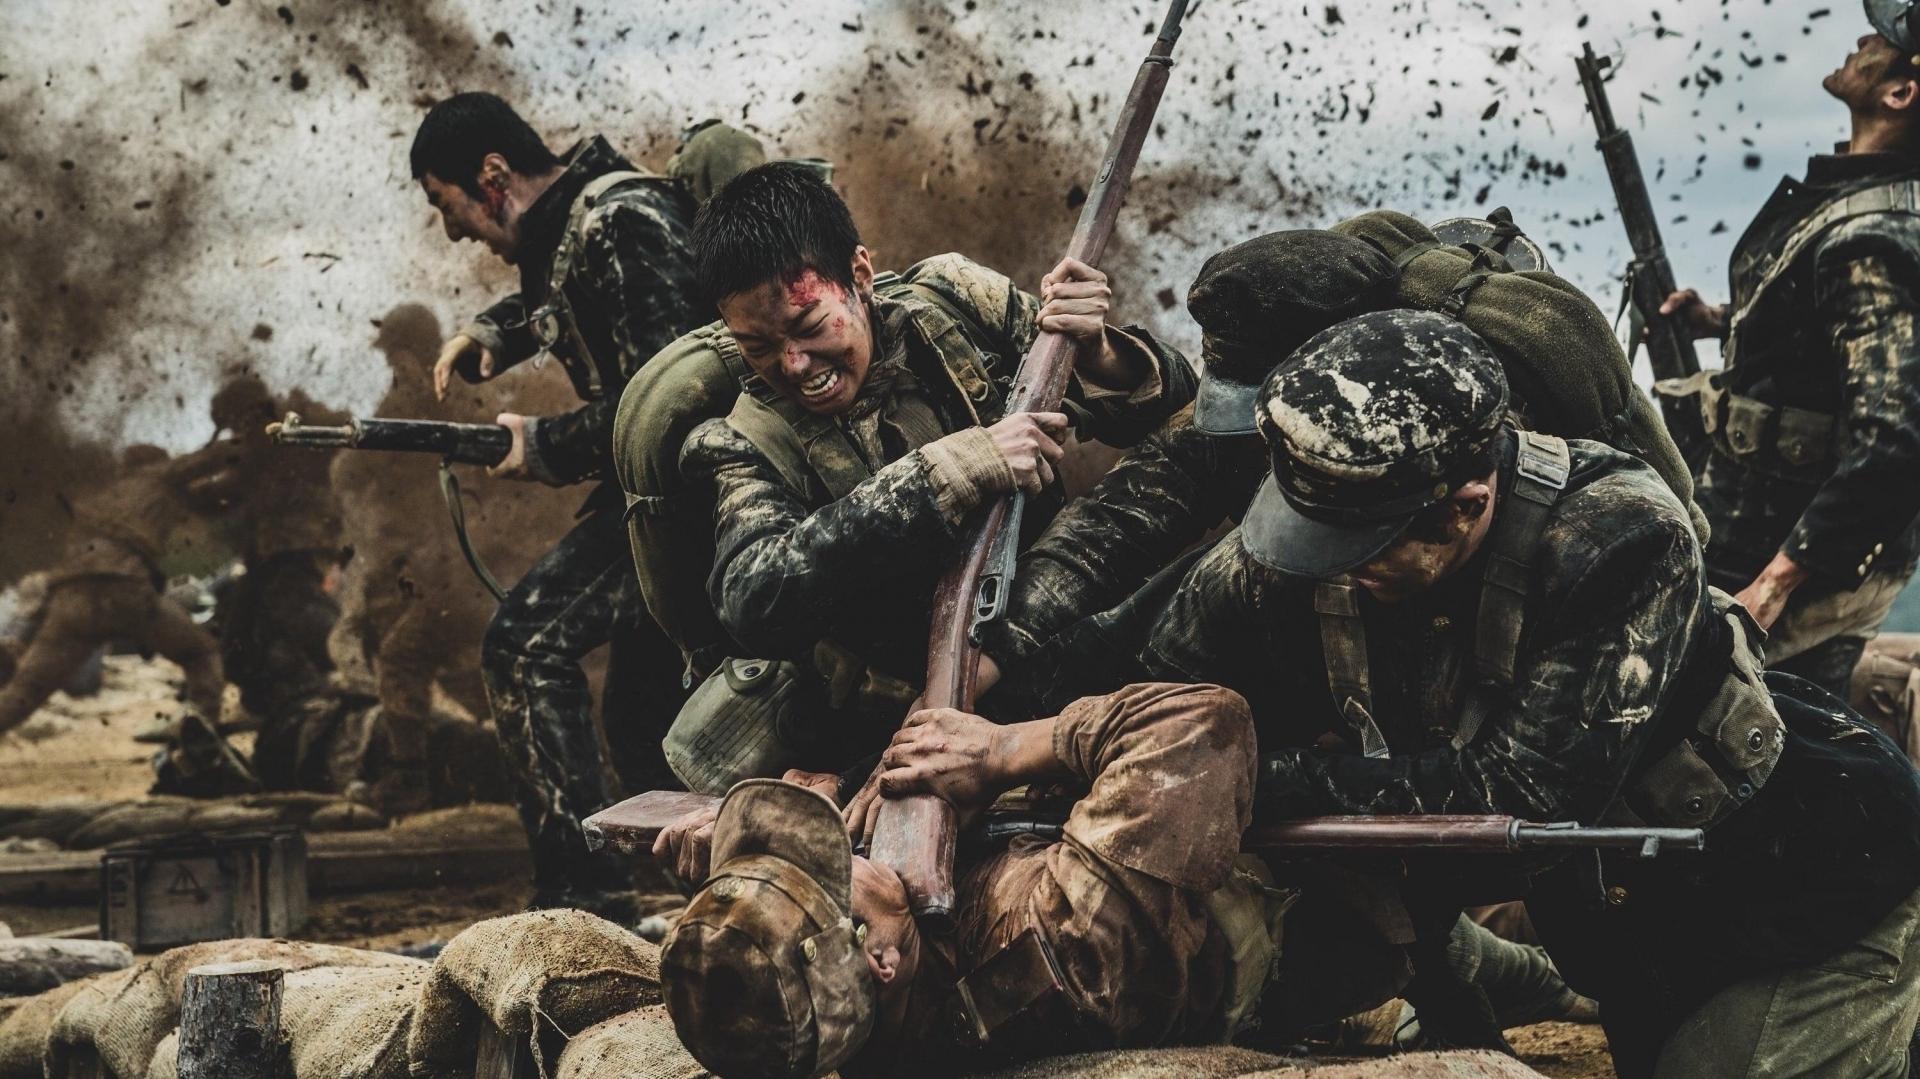 دانلود فیلم کره ای The Battle of Jangsari 2019